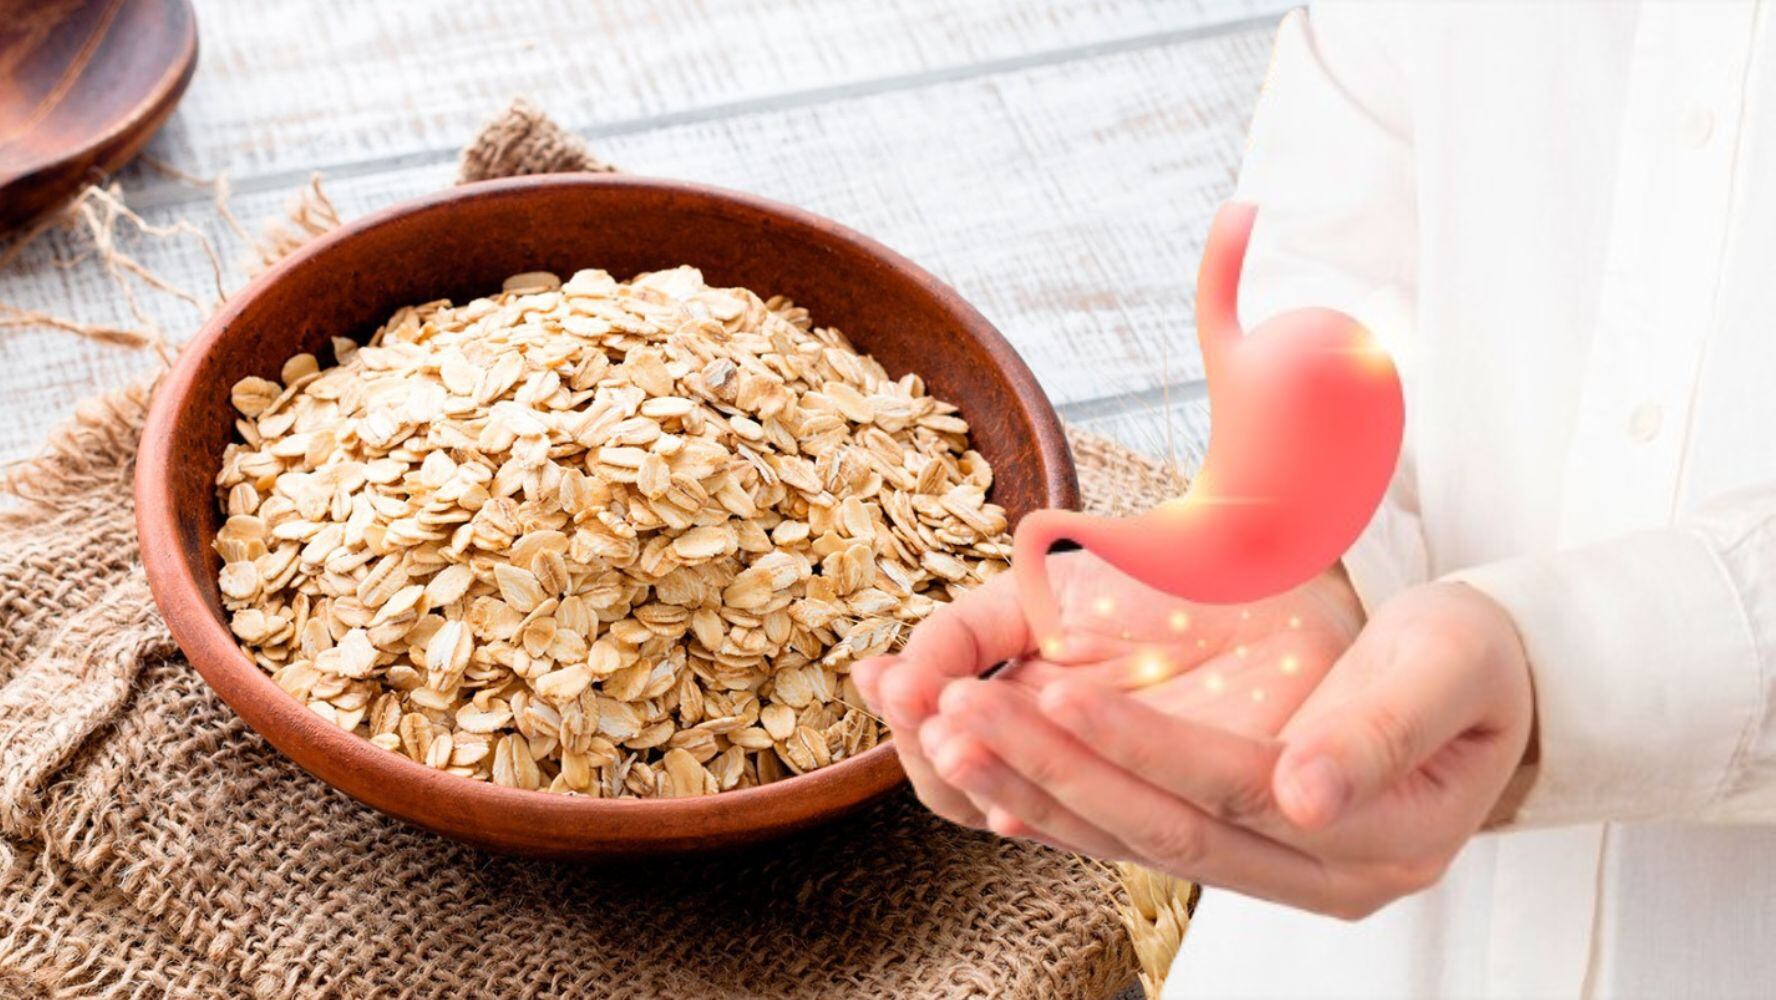 La avena es un alimento que puede beneficiar a la salud digestiva. (Foto: Shutterstock)